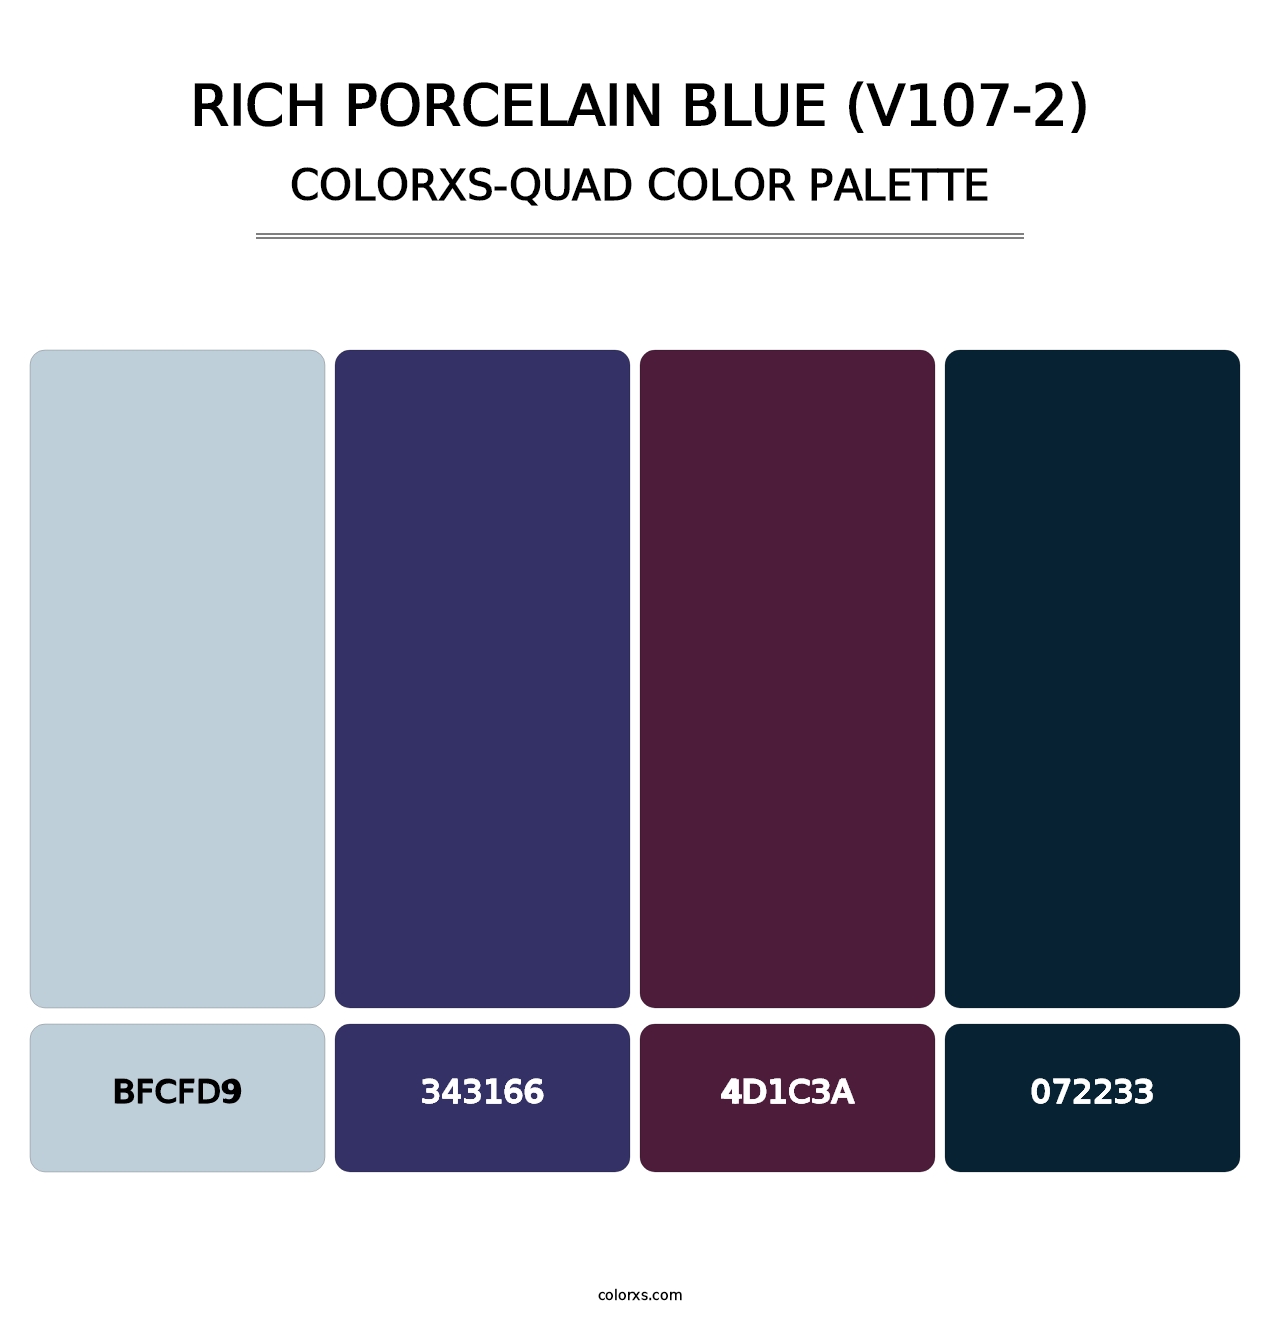 Rich Porcelain Blue (V107-2) - Colorxs Quad Palette